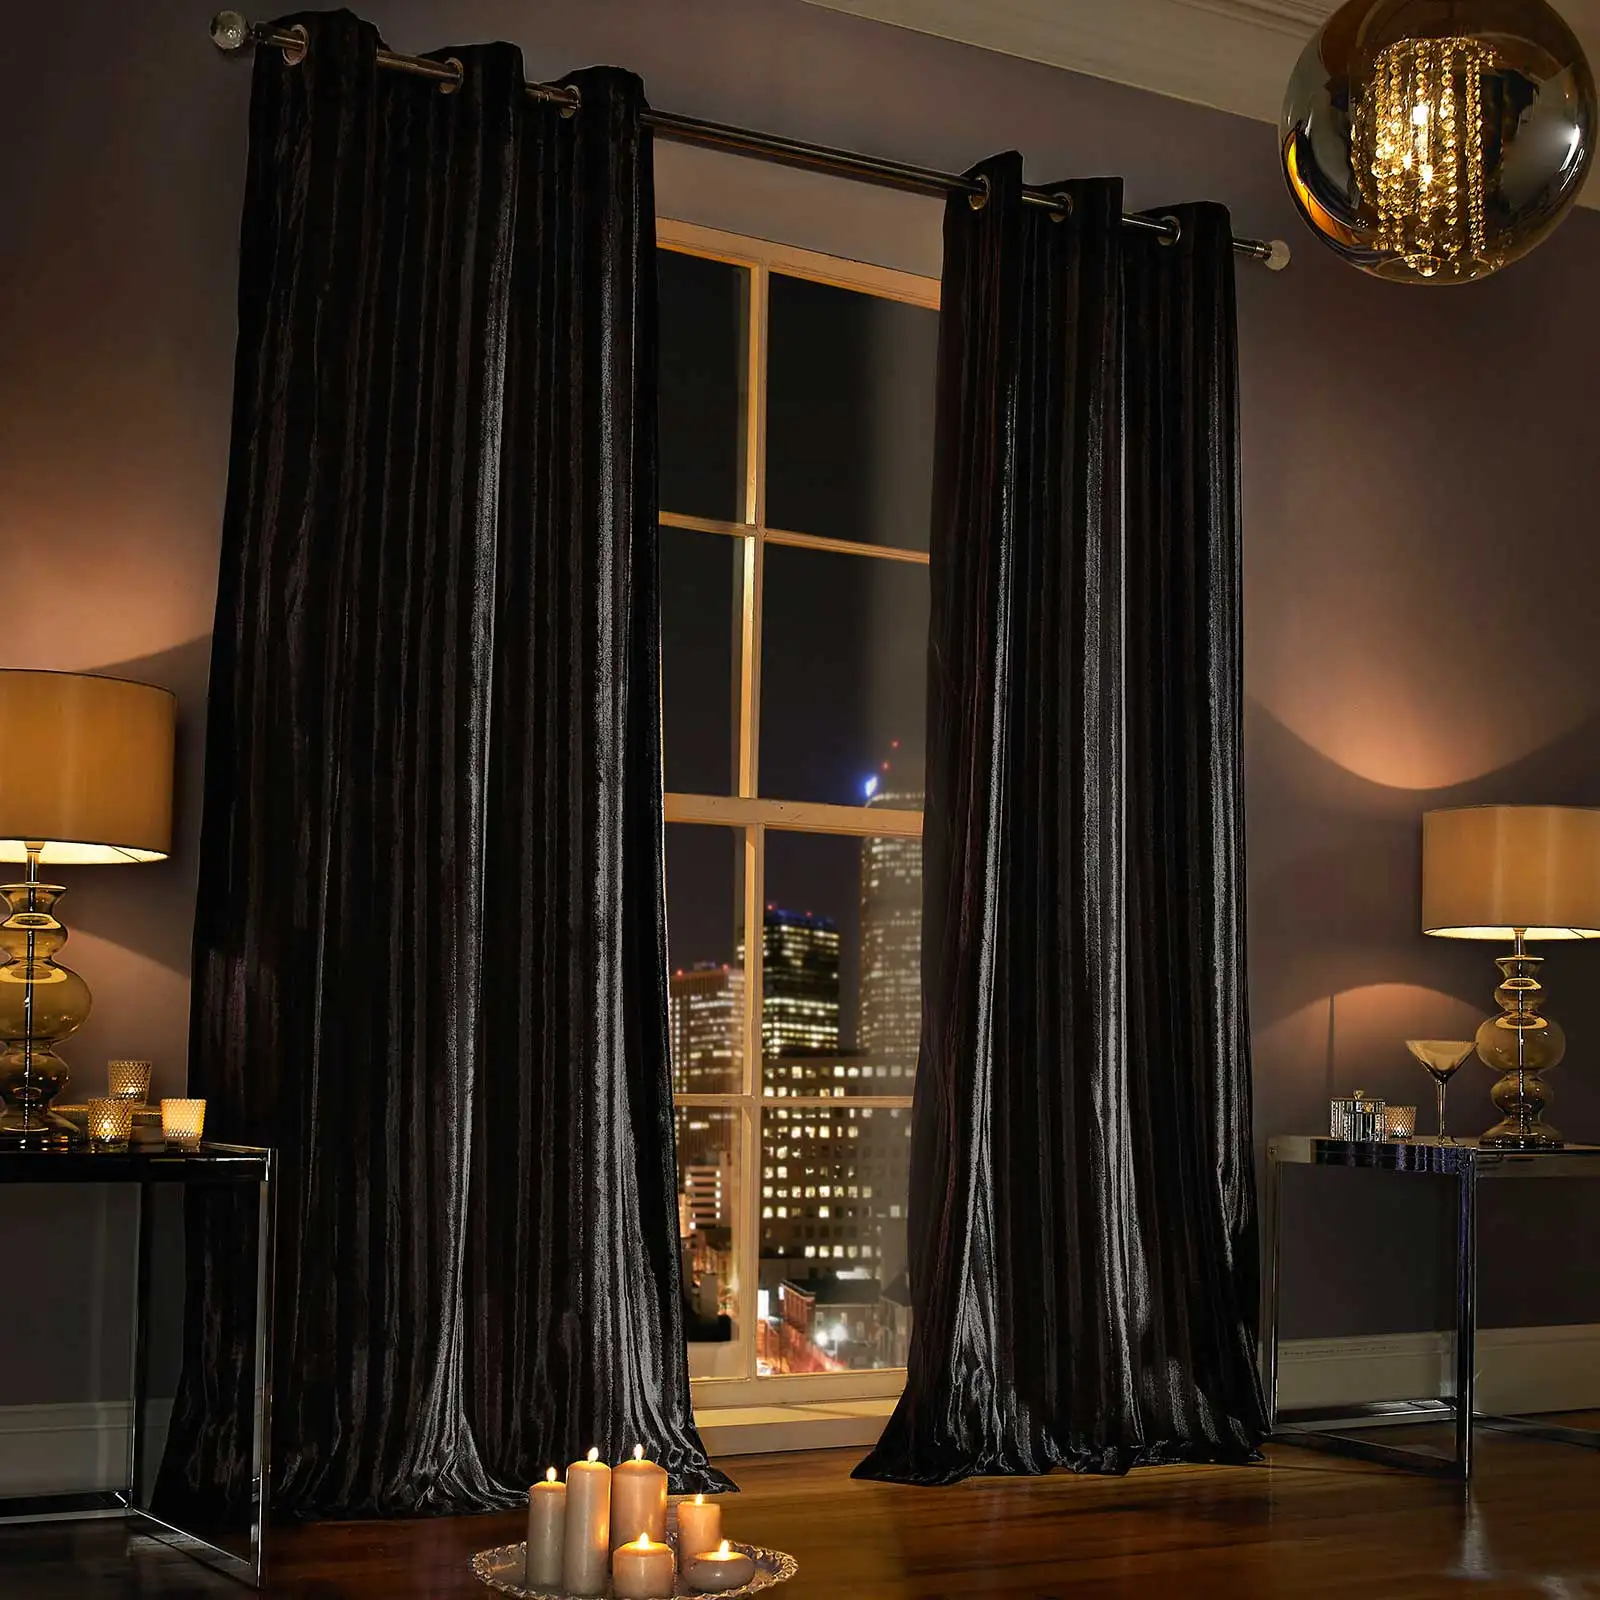 Luxury curtain panels